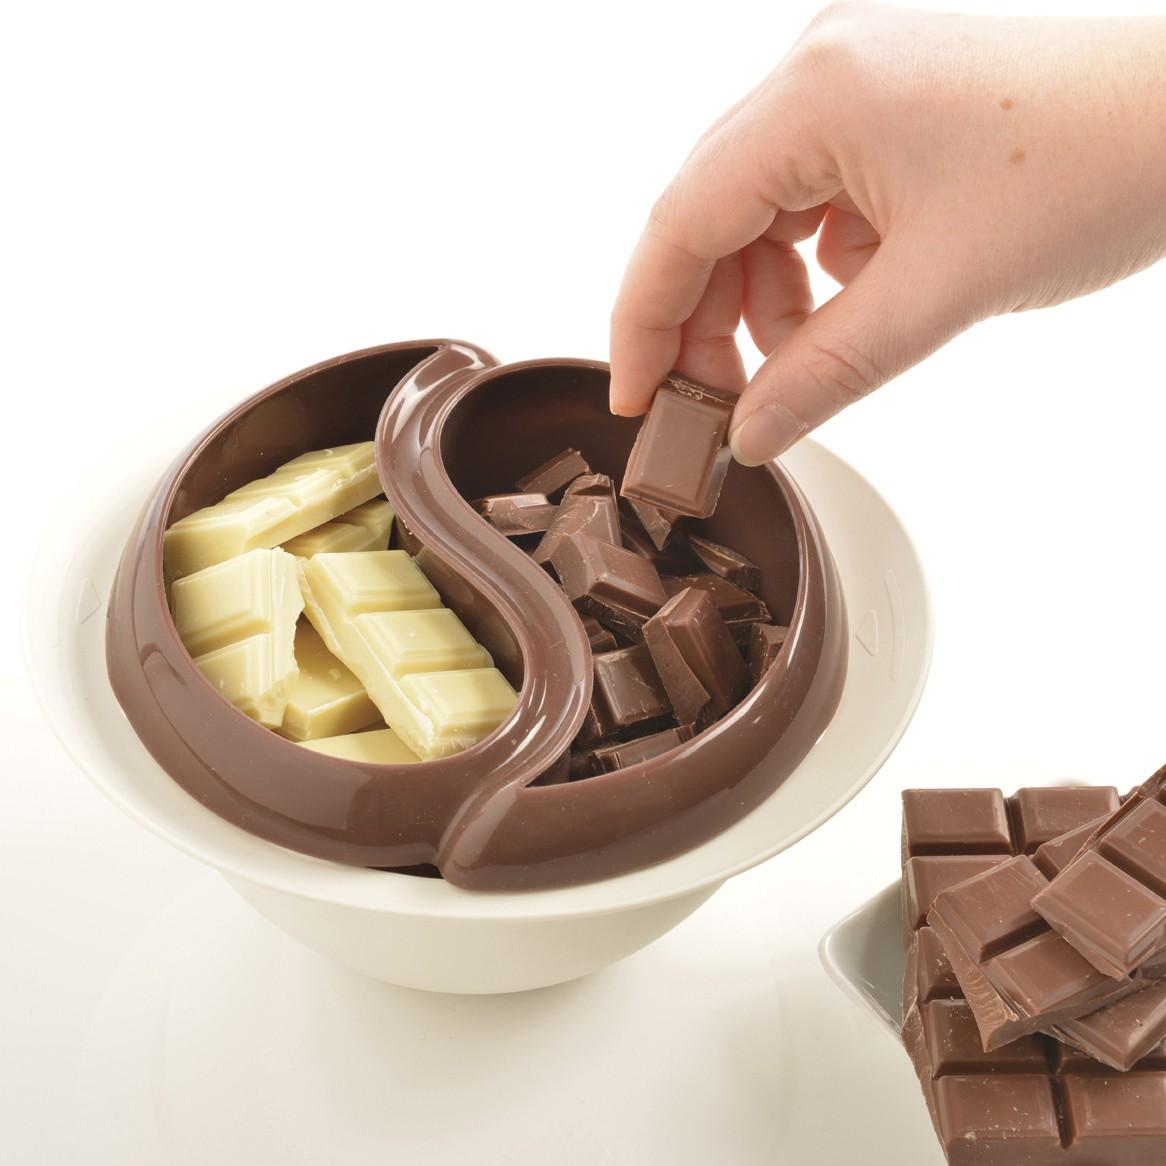 Mozak nas tjera da jedemo čokoladu